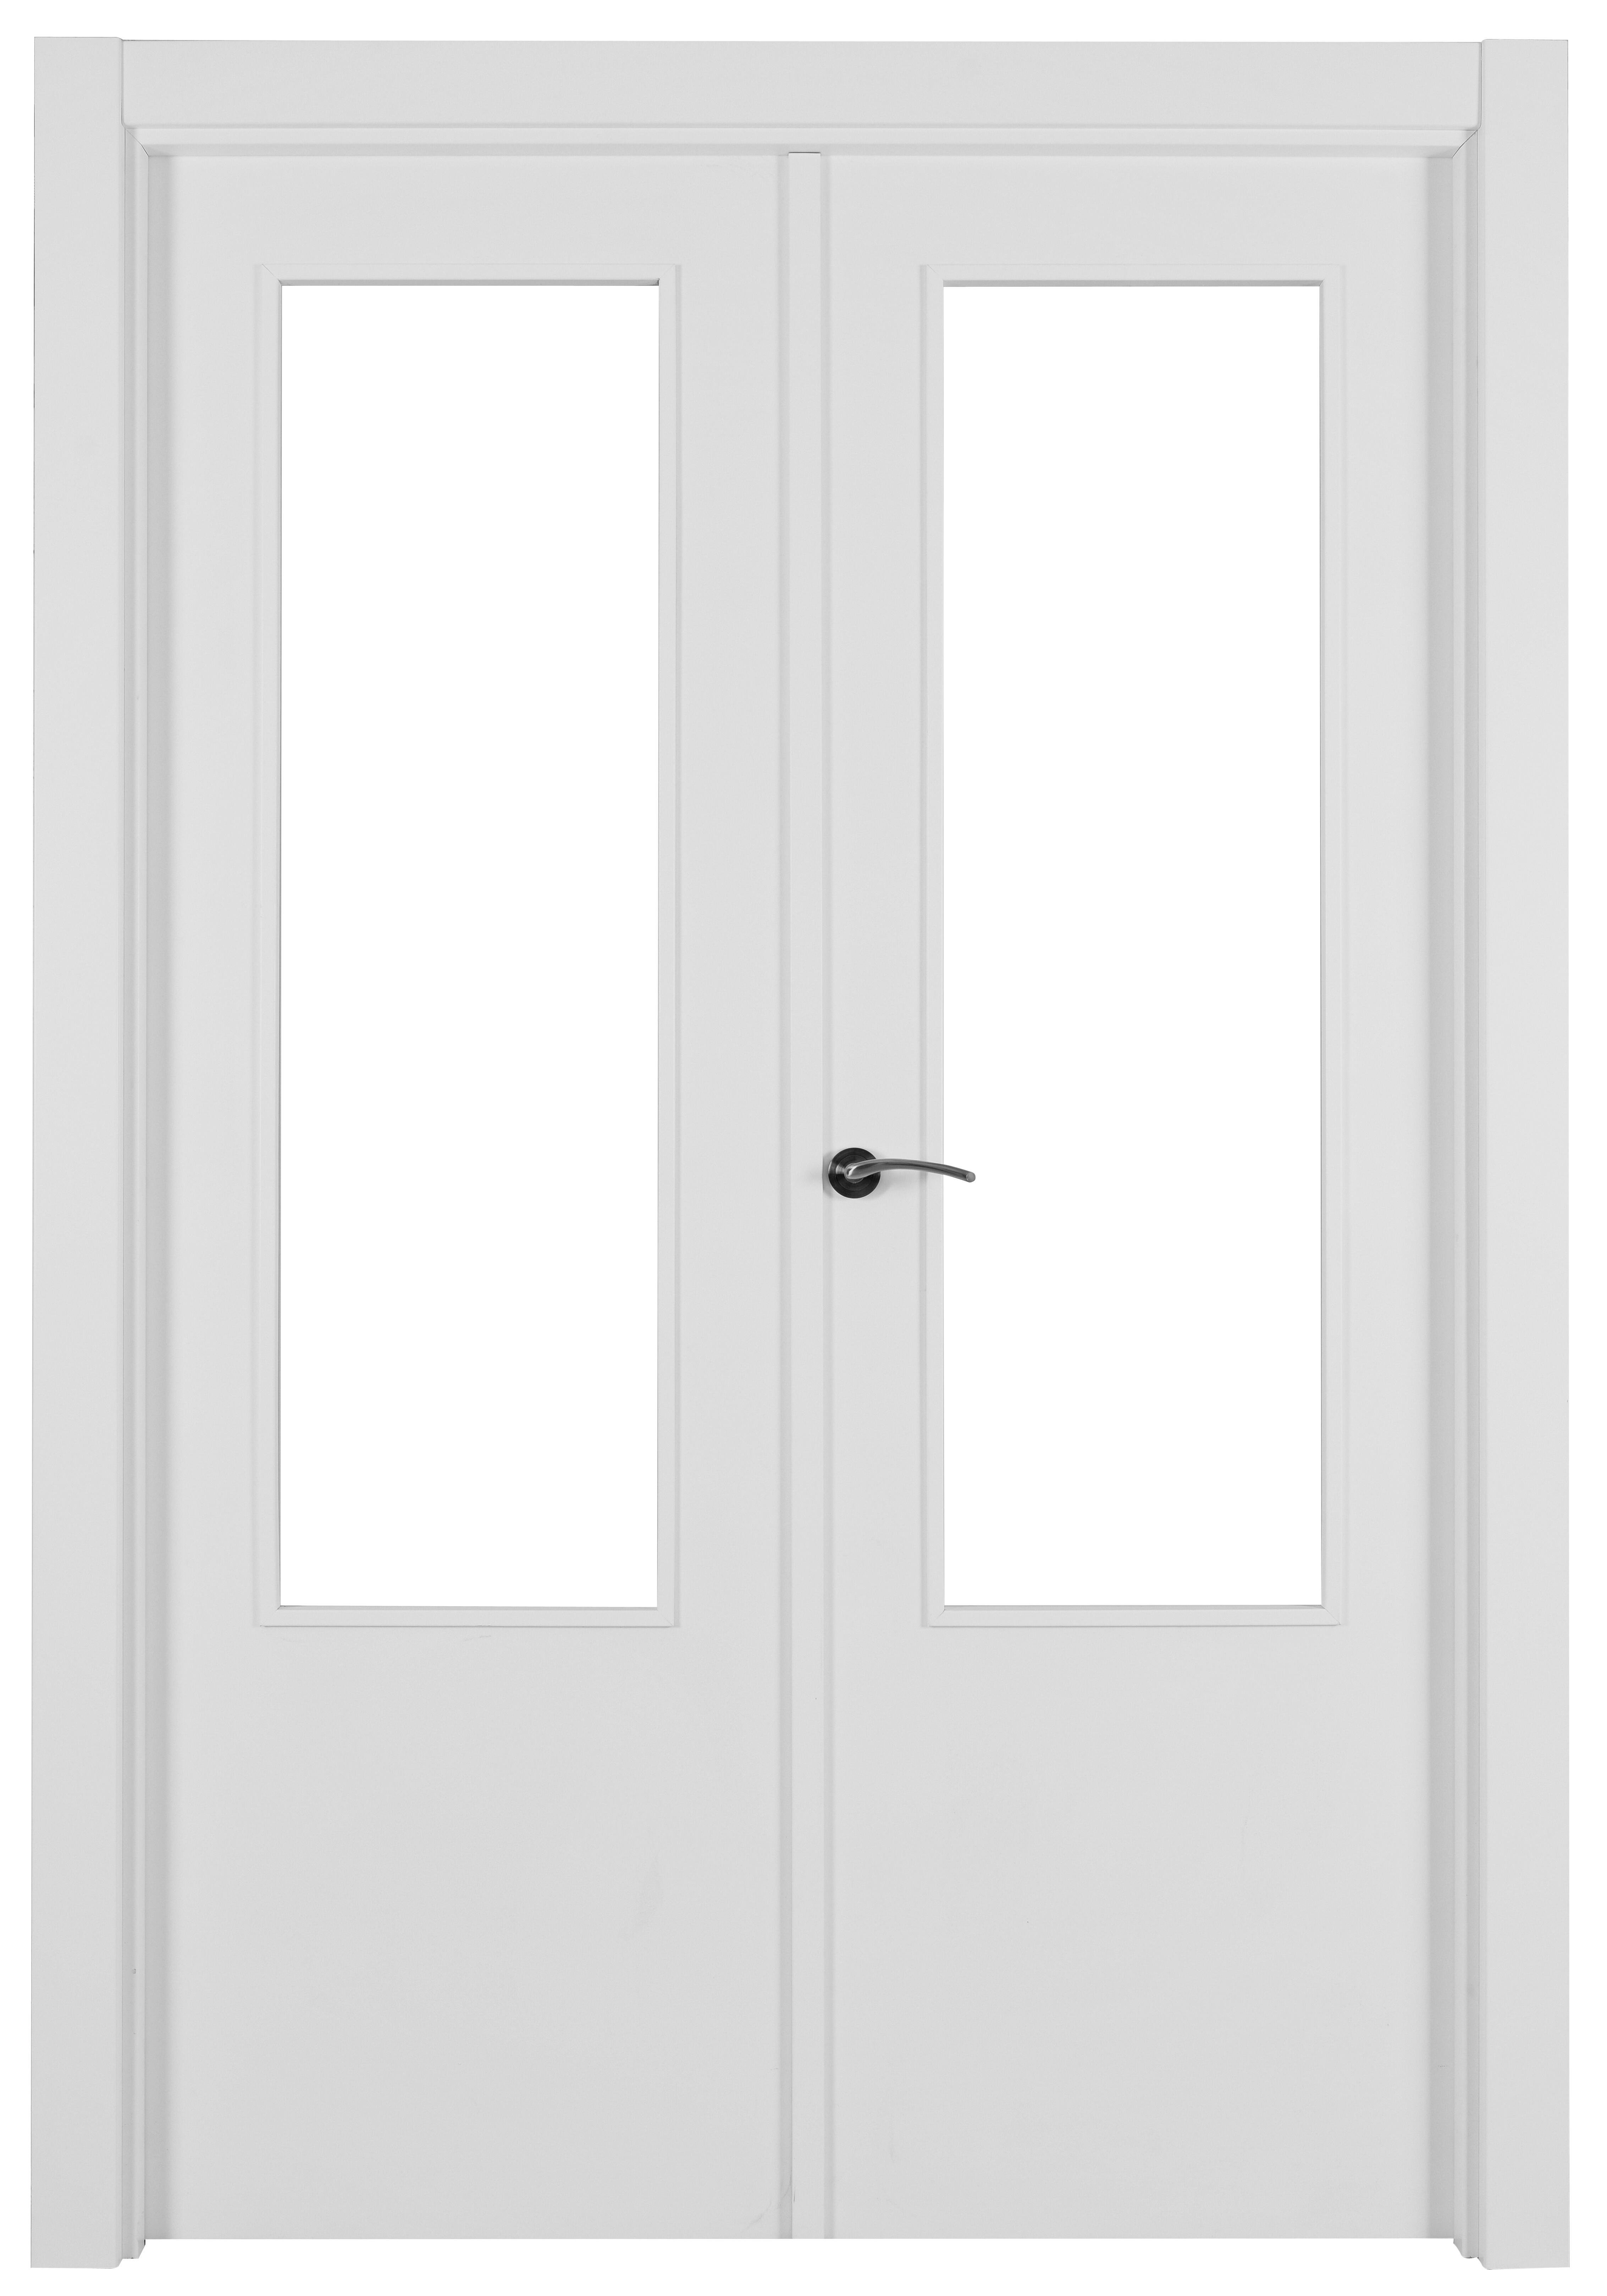 Puerta abatible lyon blanca aero blanco derecha con cristal de 110x30 y 125cm